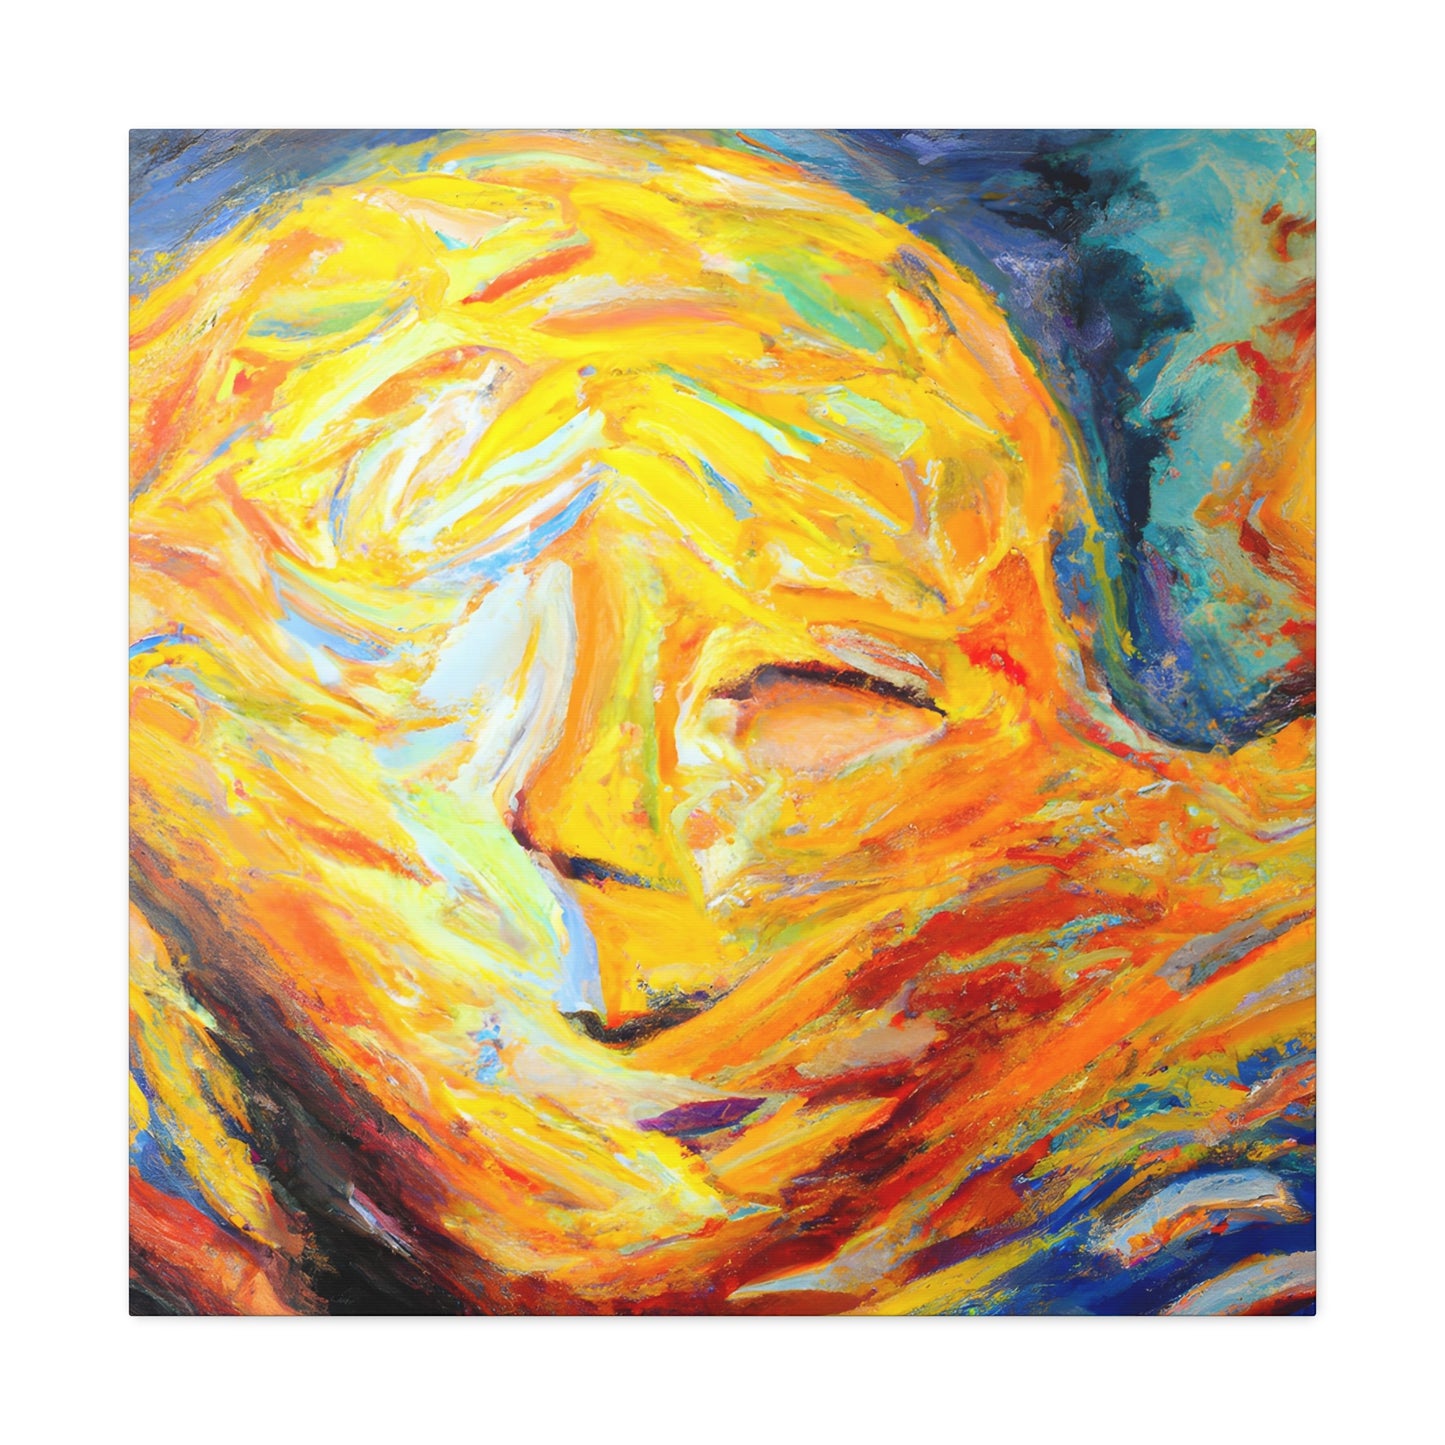 Oranur - Autism Canvas Art